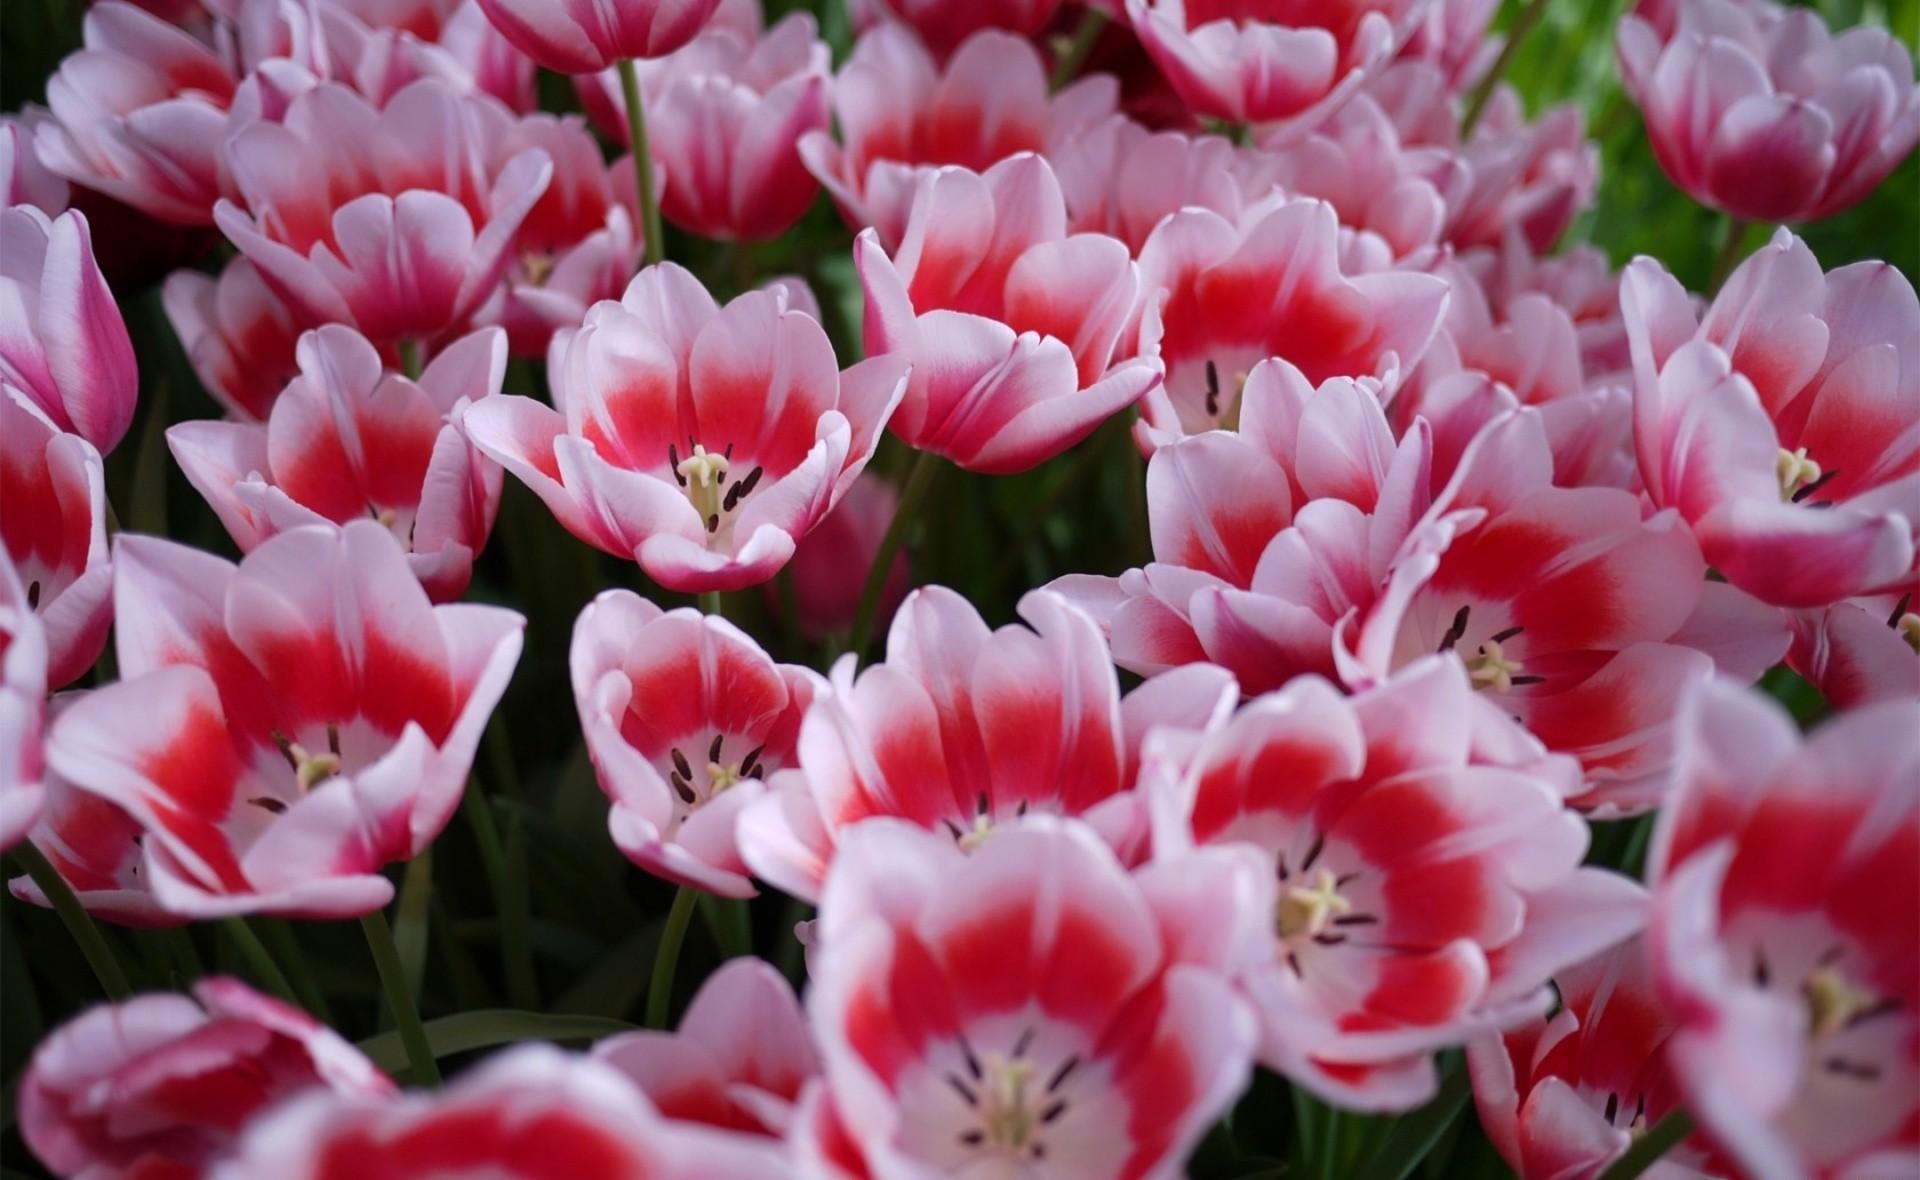 flower bed, flowers, tulips, flowerbed, disbanded, loose, spring